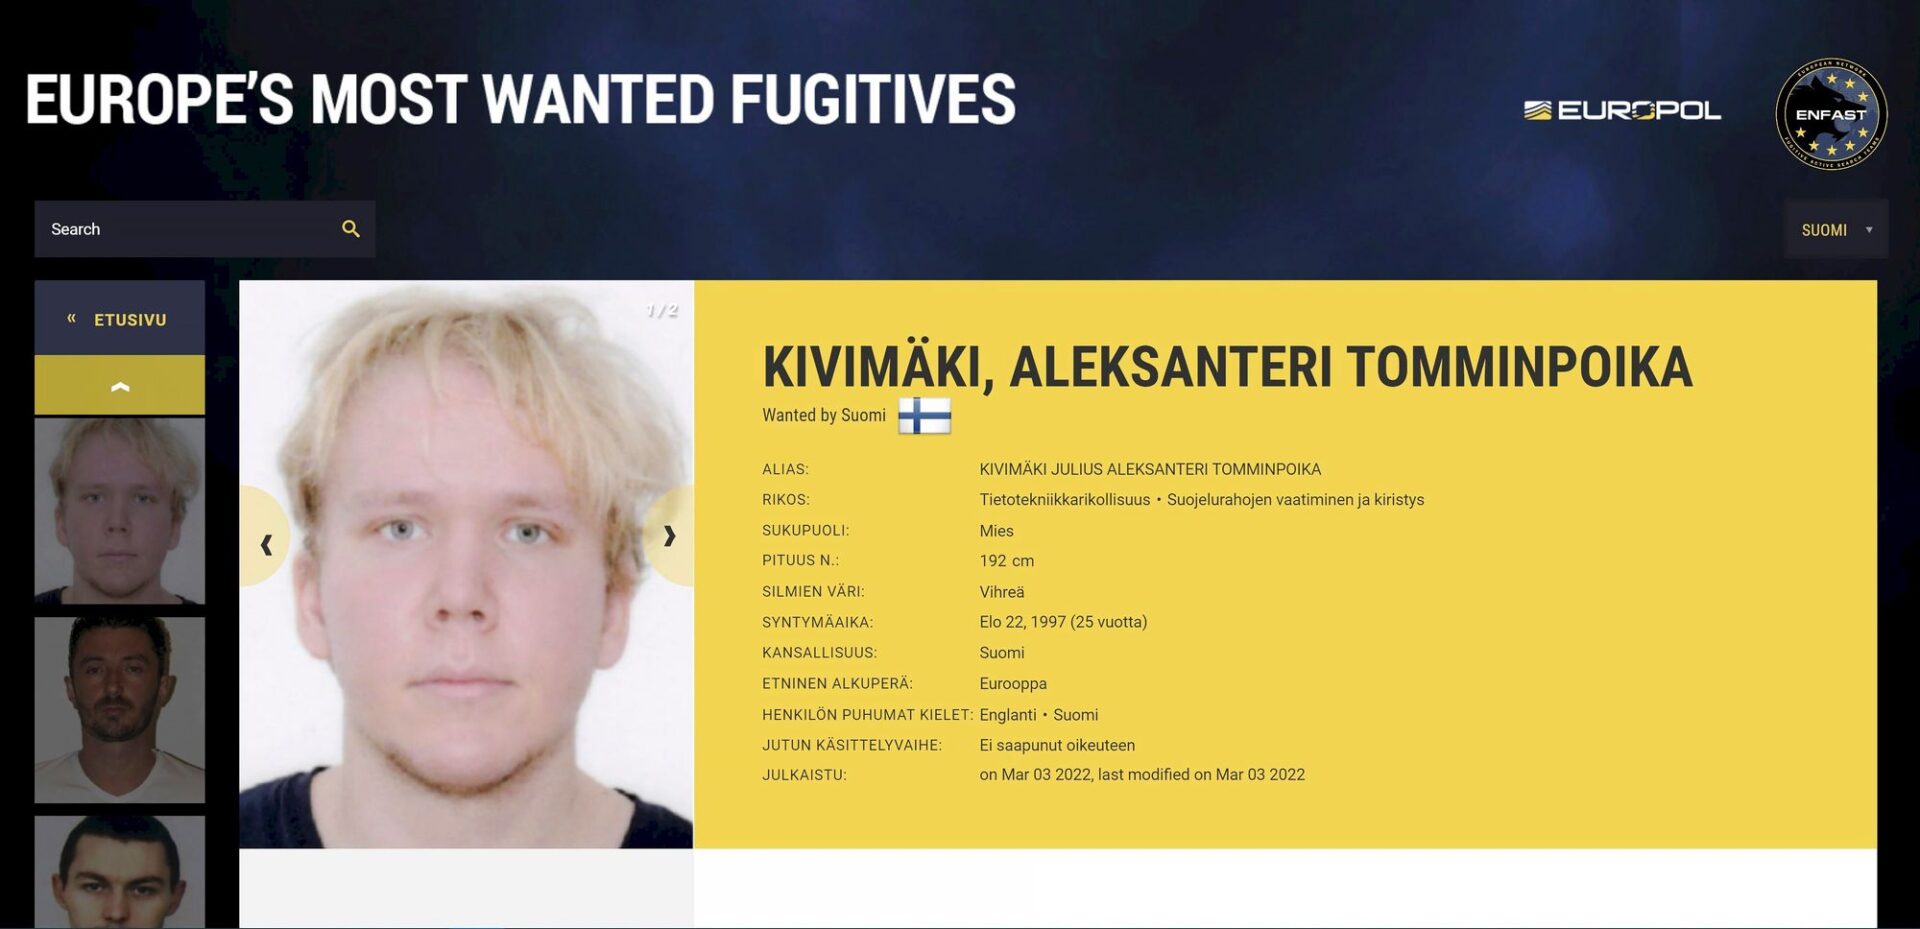 Kuvakaappaus Europolin Europe’s most wanted fugitives -verkkosivulta. Kuvassa näkyy Vastaamo-tietomurrosta epäillyn suomalaisen nimi ja kuva. Poliisin tiedoissa epäillyn nimeksi mainitaan Aleksanteri Tomminpoika Kivimäki. Epäilty on kiistänyt syyllistyneensä tietomurtoon. <span class="typography__copyright">© Lehtikuva</span>